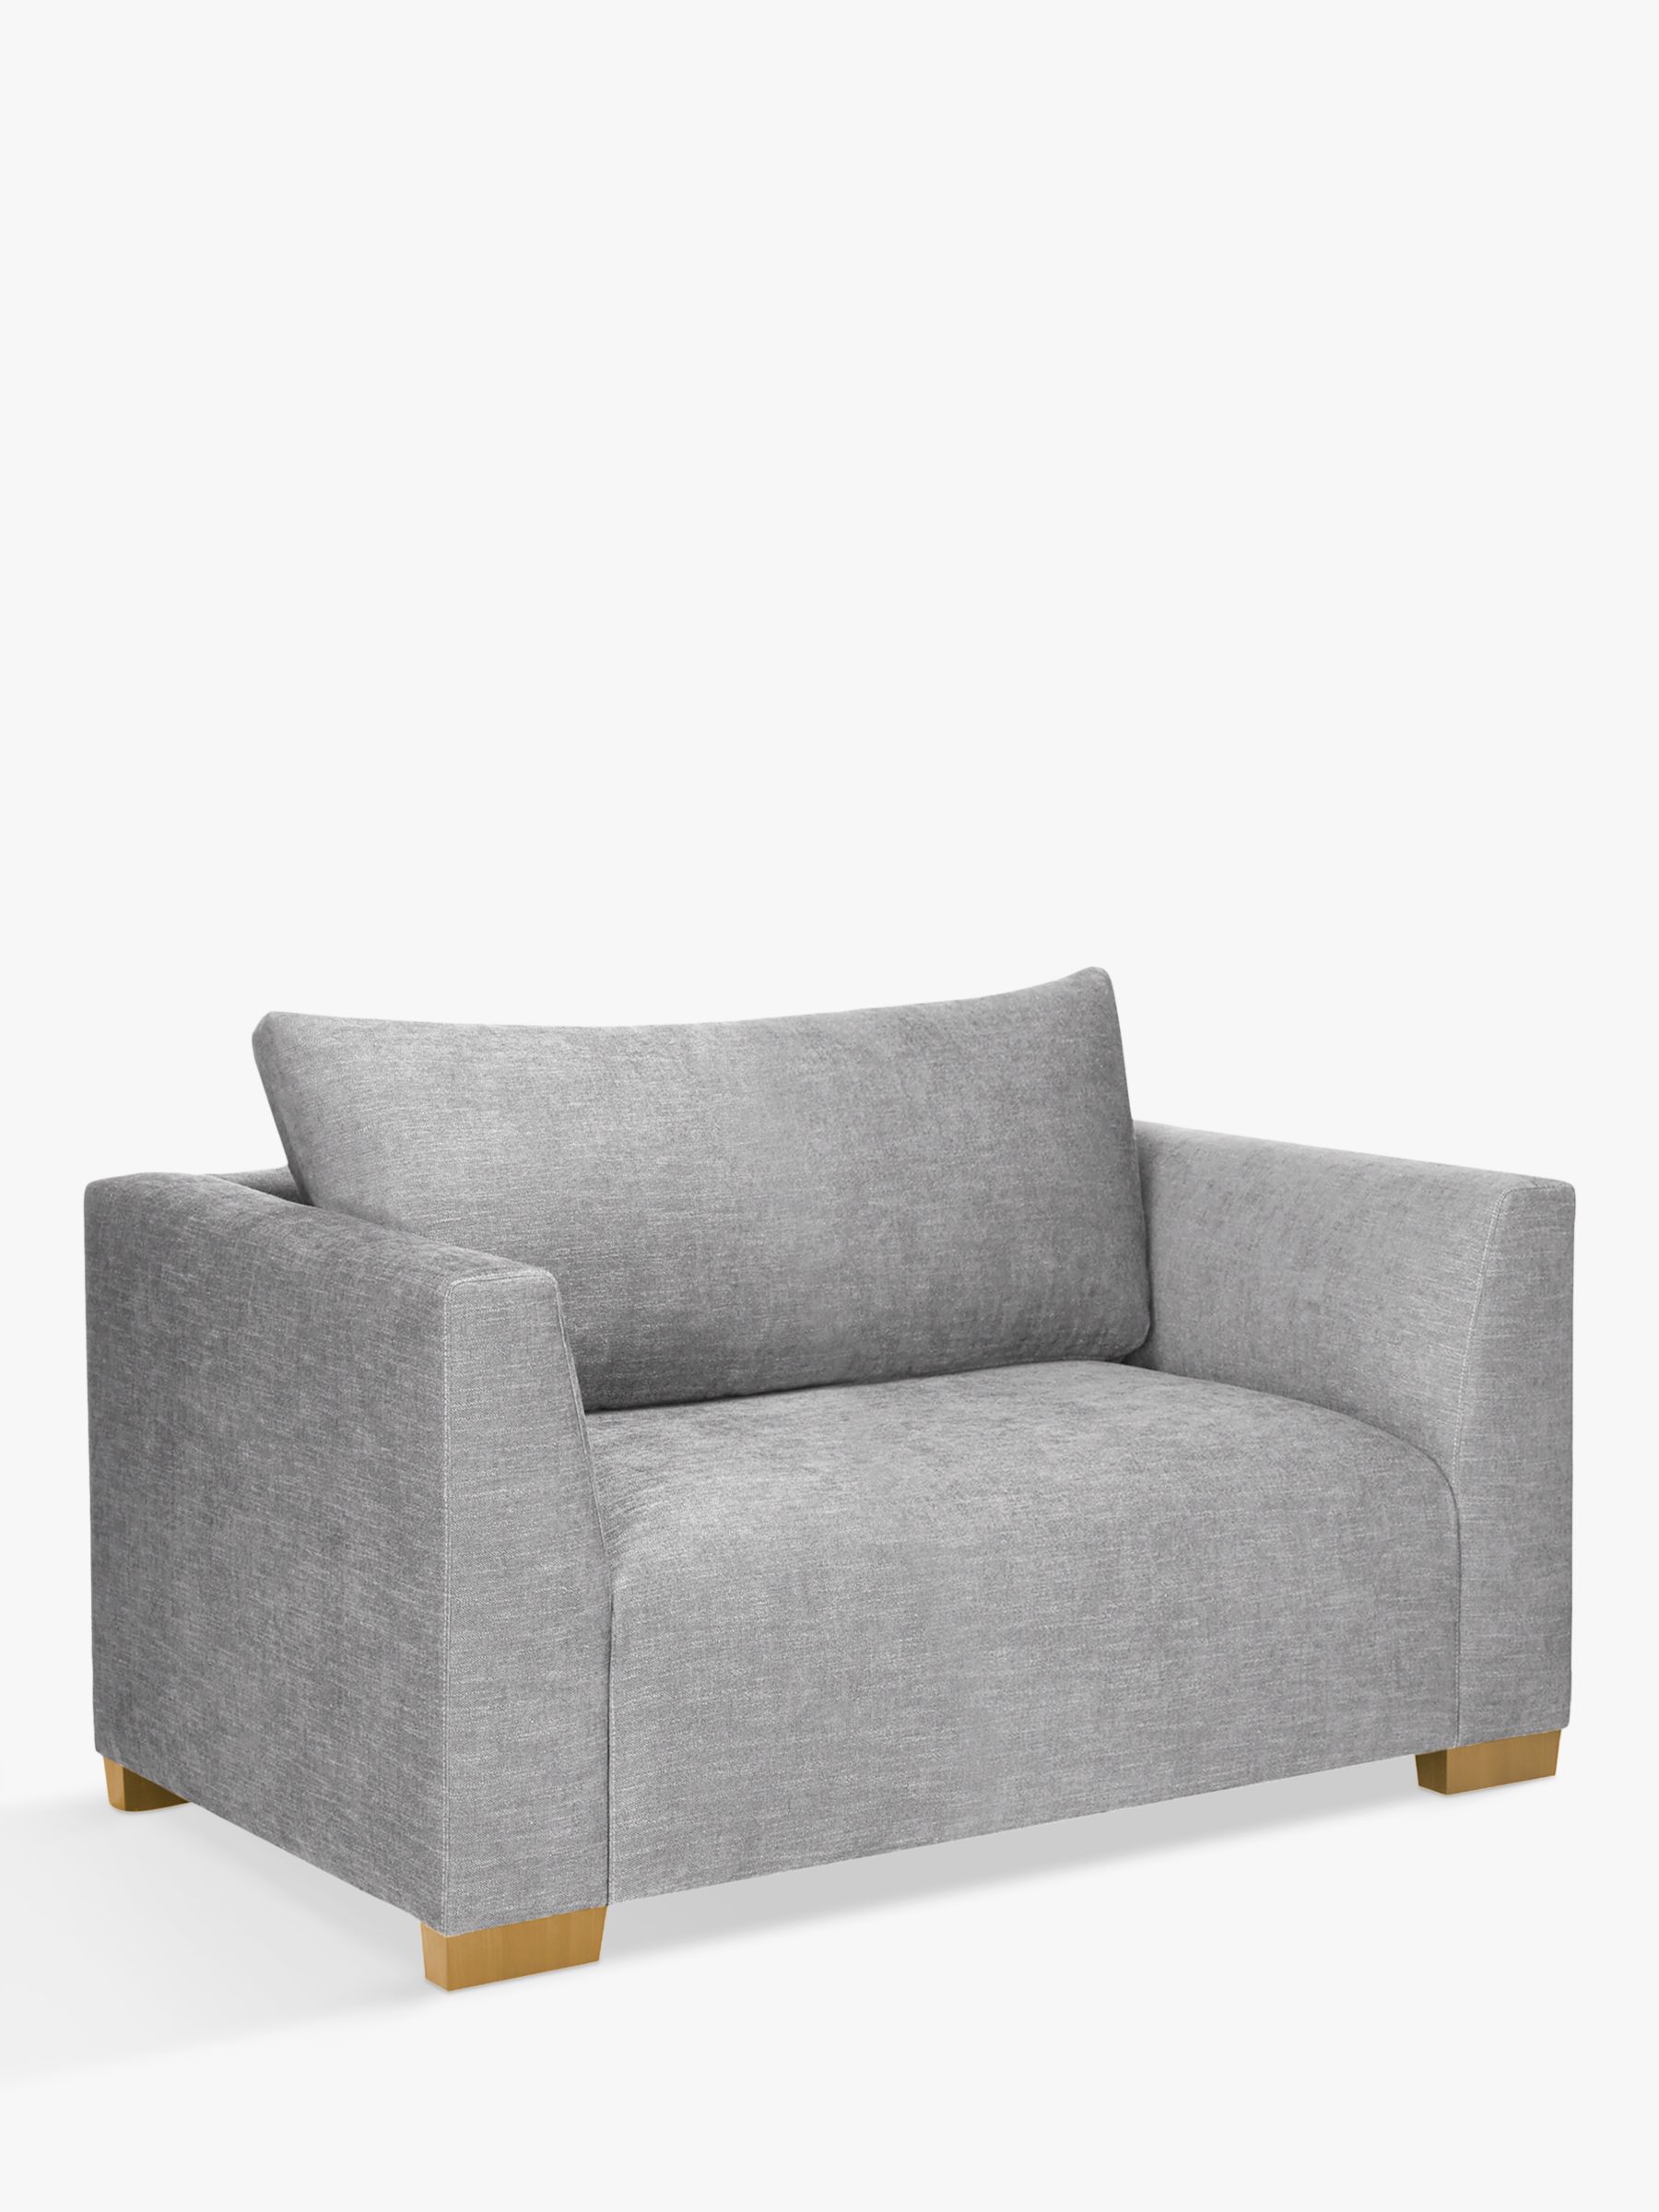 John Lewis Tokyo Medium 2 Seater Sofa